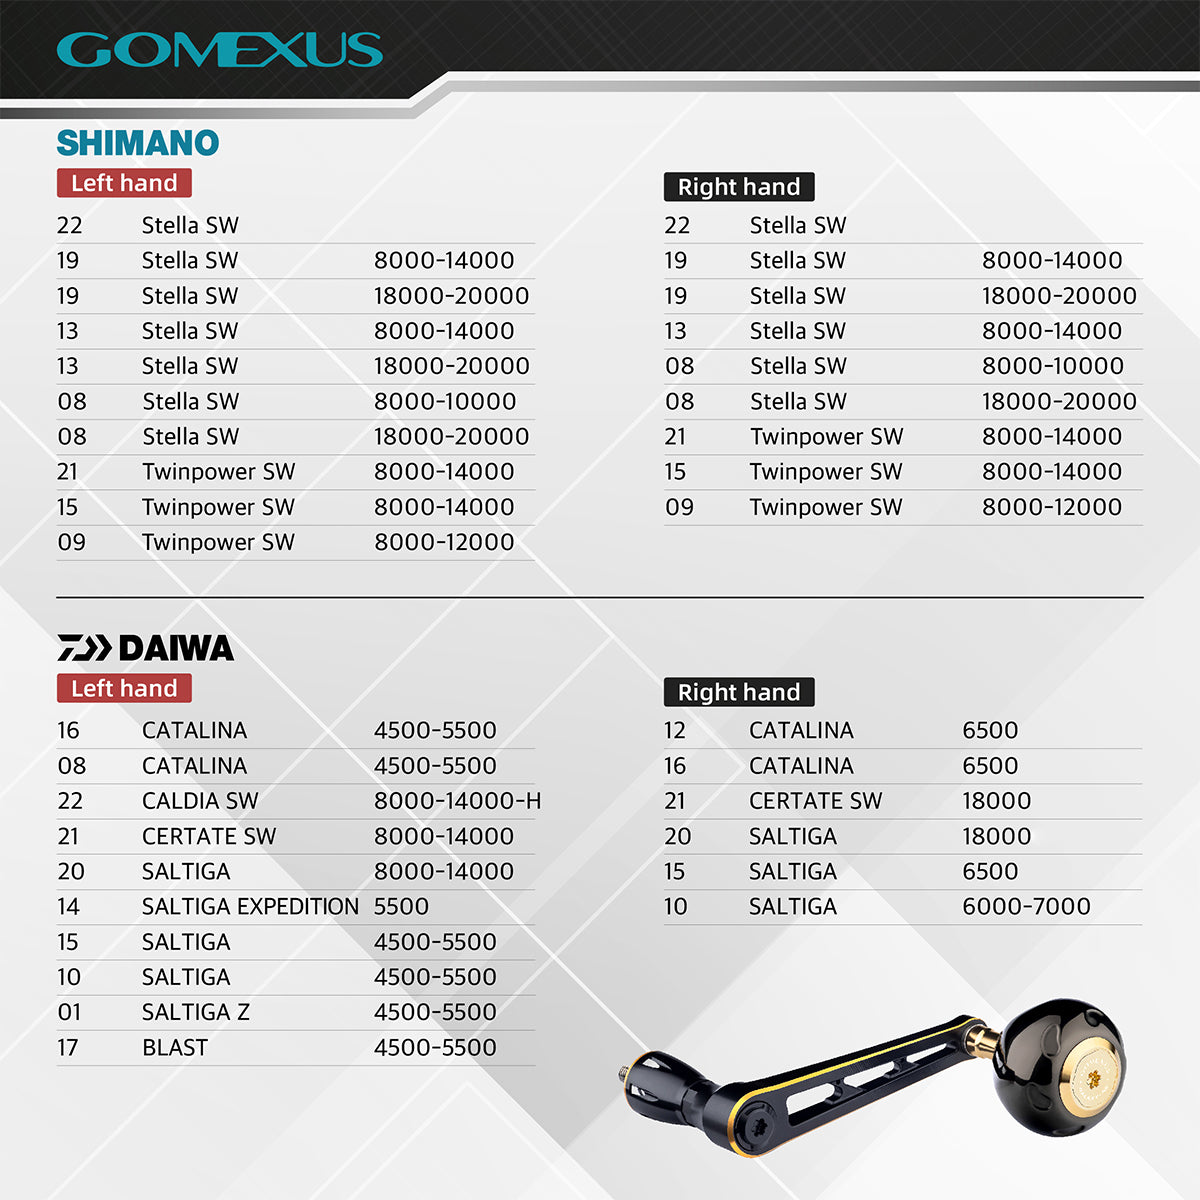 Gomexus Aluminum Handle with Titanium Knob LMY-TB50